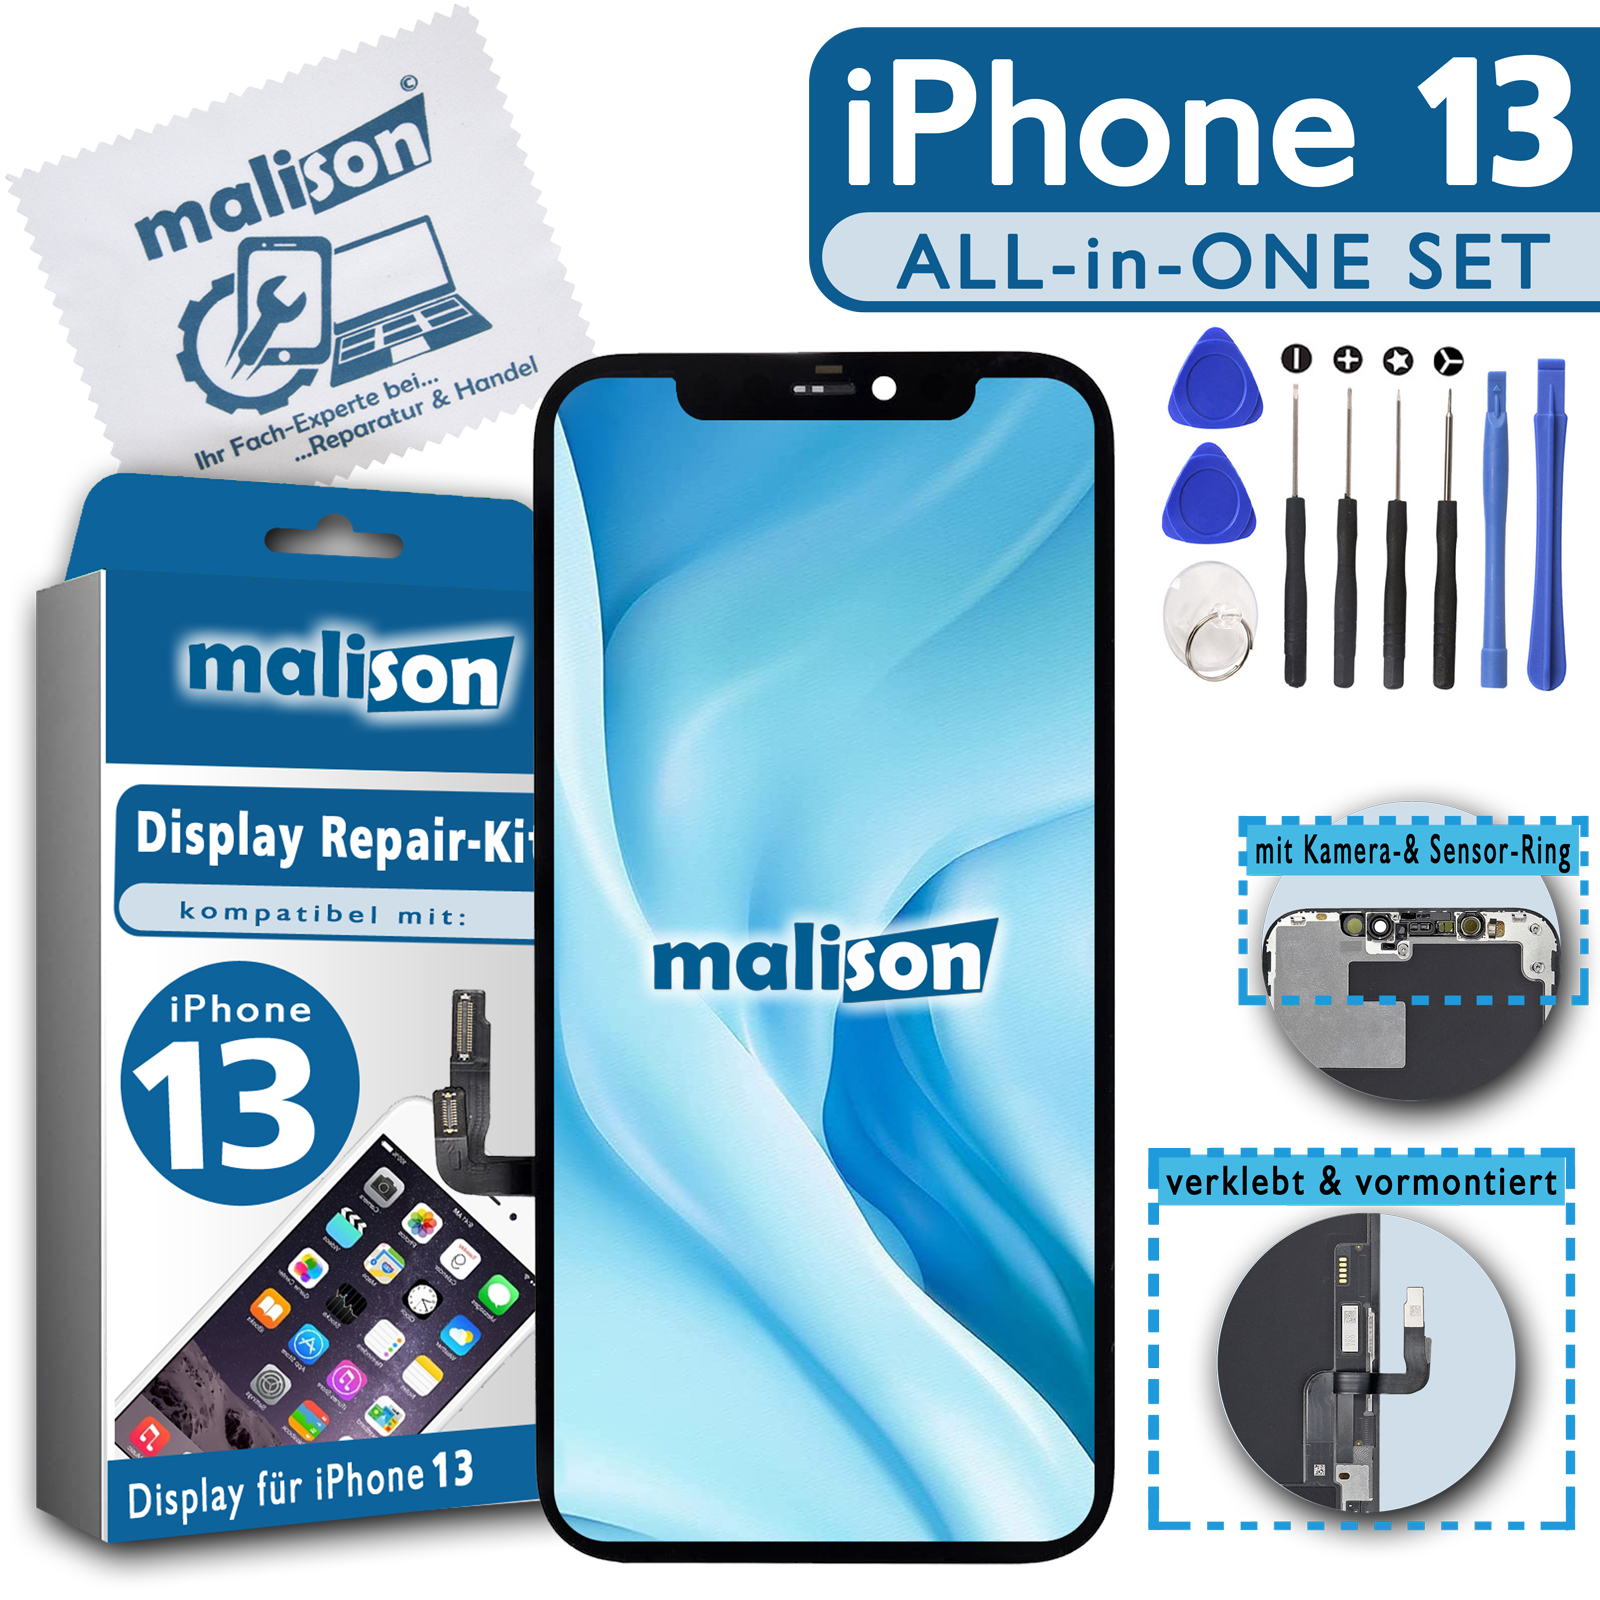 Display für iPhone 13 (verschiedene Qualitäten zur Auswahl)